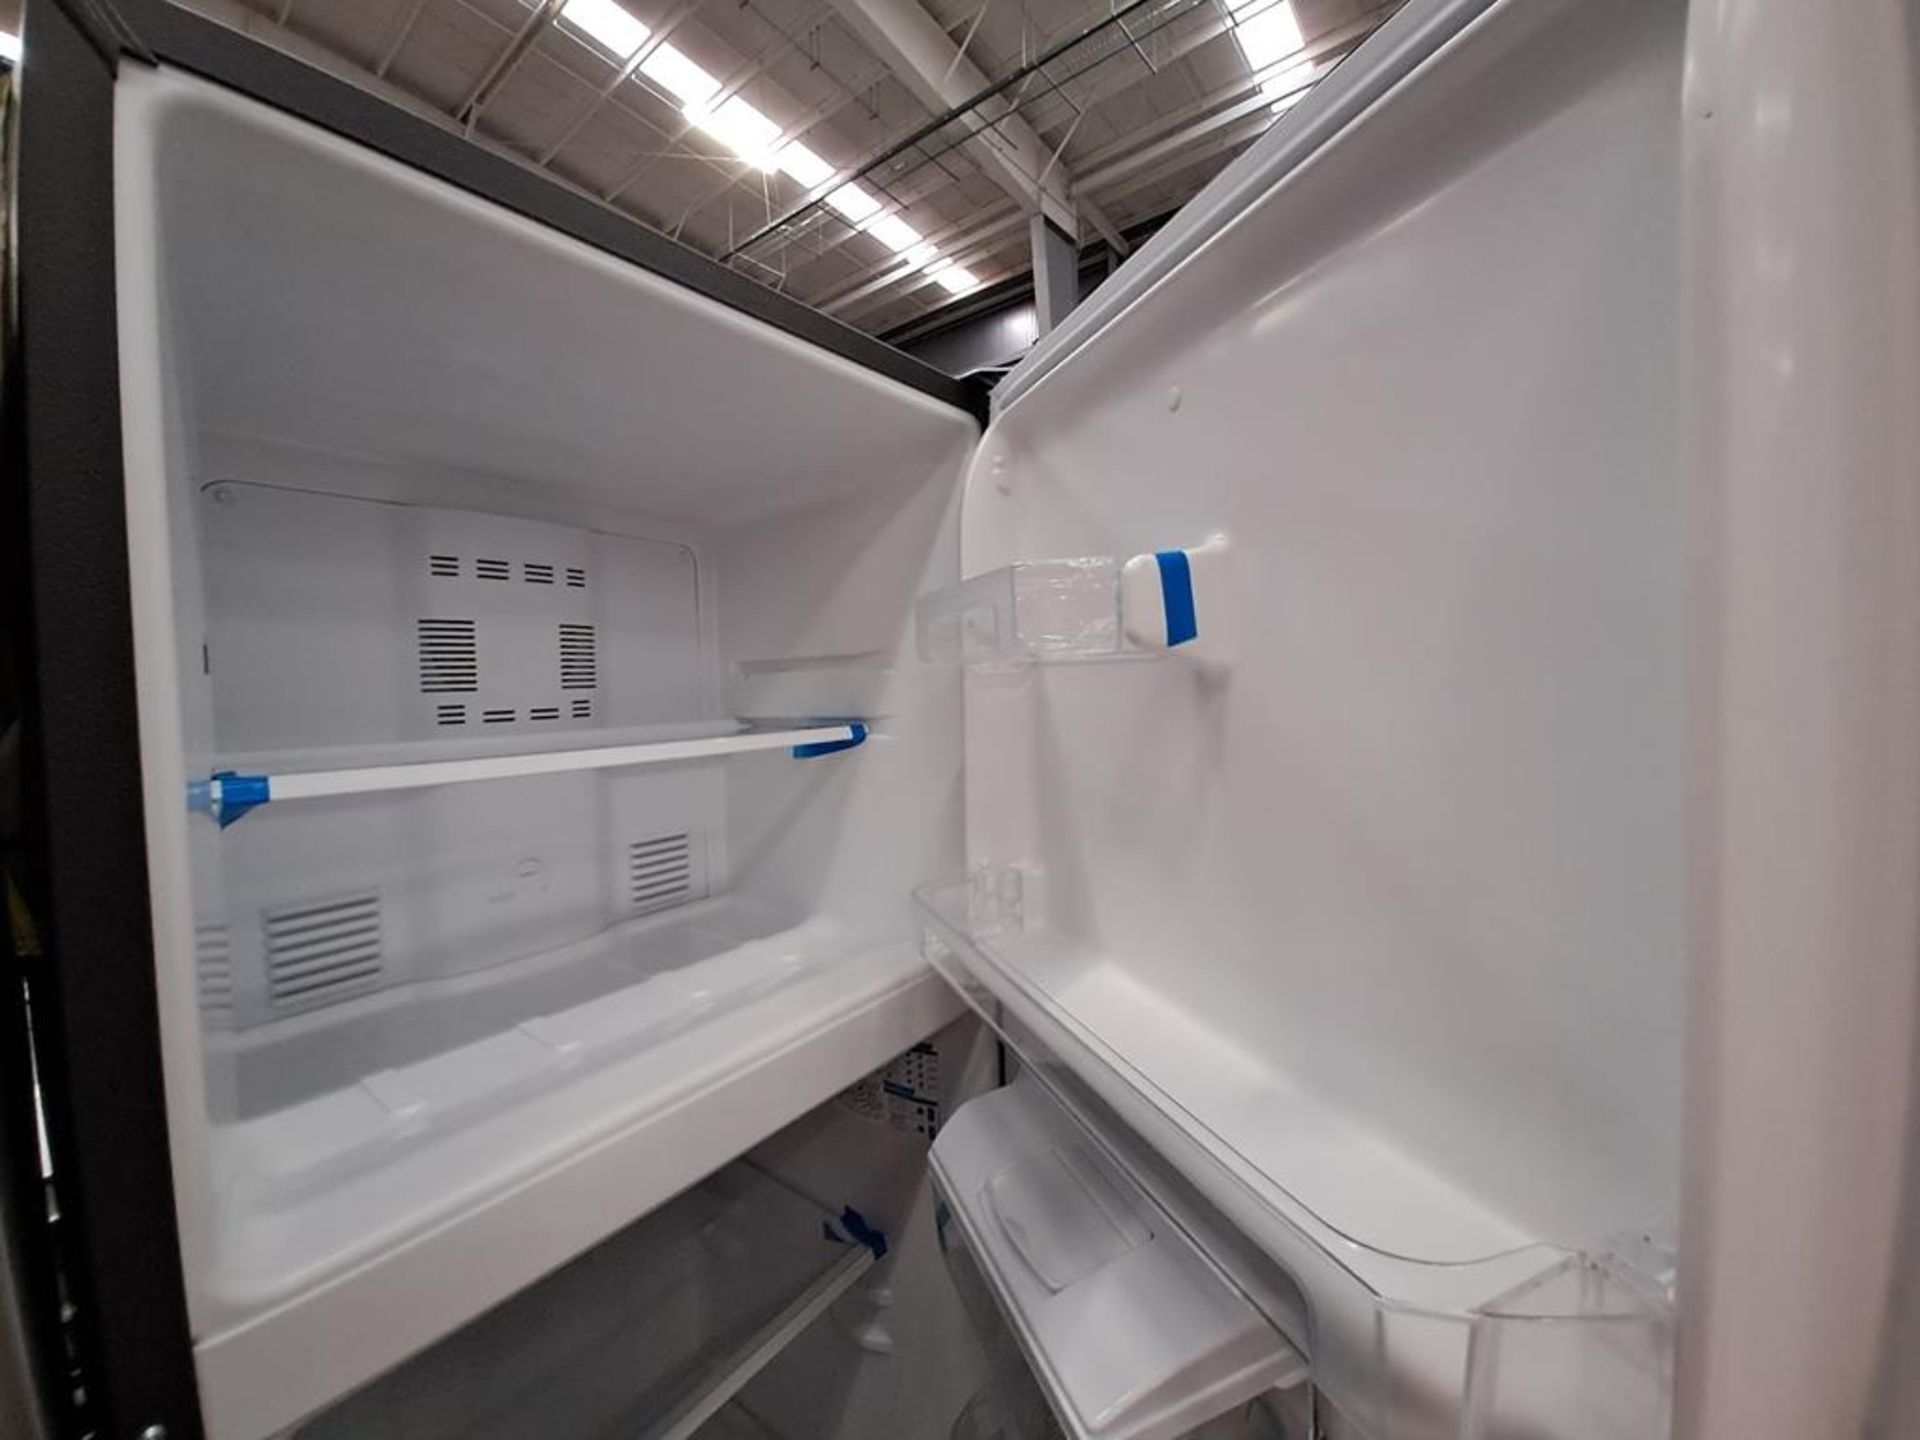 Lote de 2 refrigeradores contiene: 1 Refrigerador con dispensador de agua Marca MABE, Modelo MRA300 - Image 4 of 8